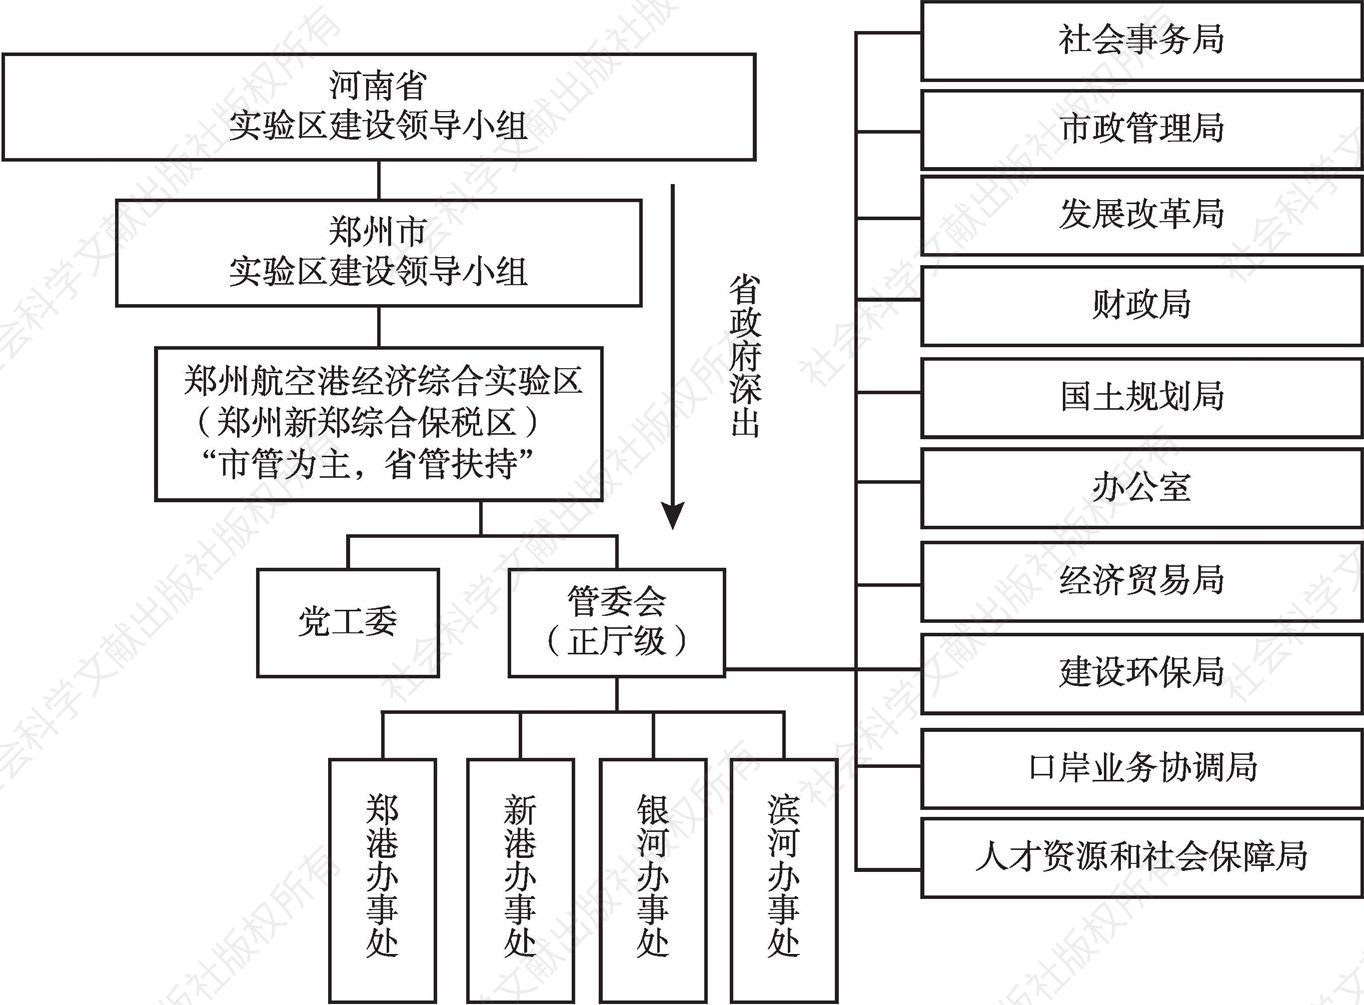 图11 郑州航空港经济综合实验区管理体制